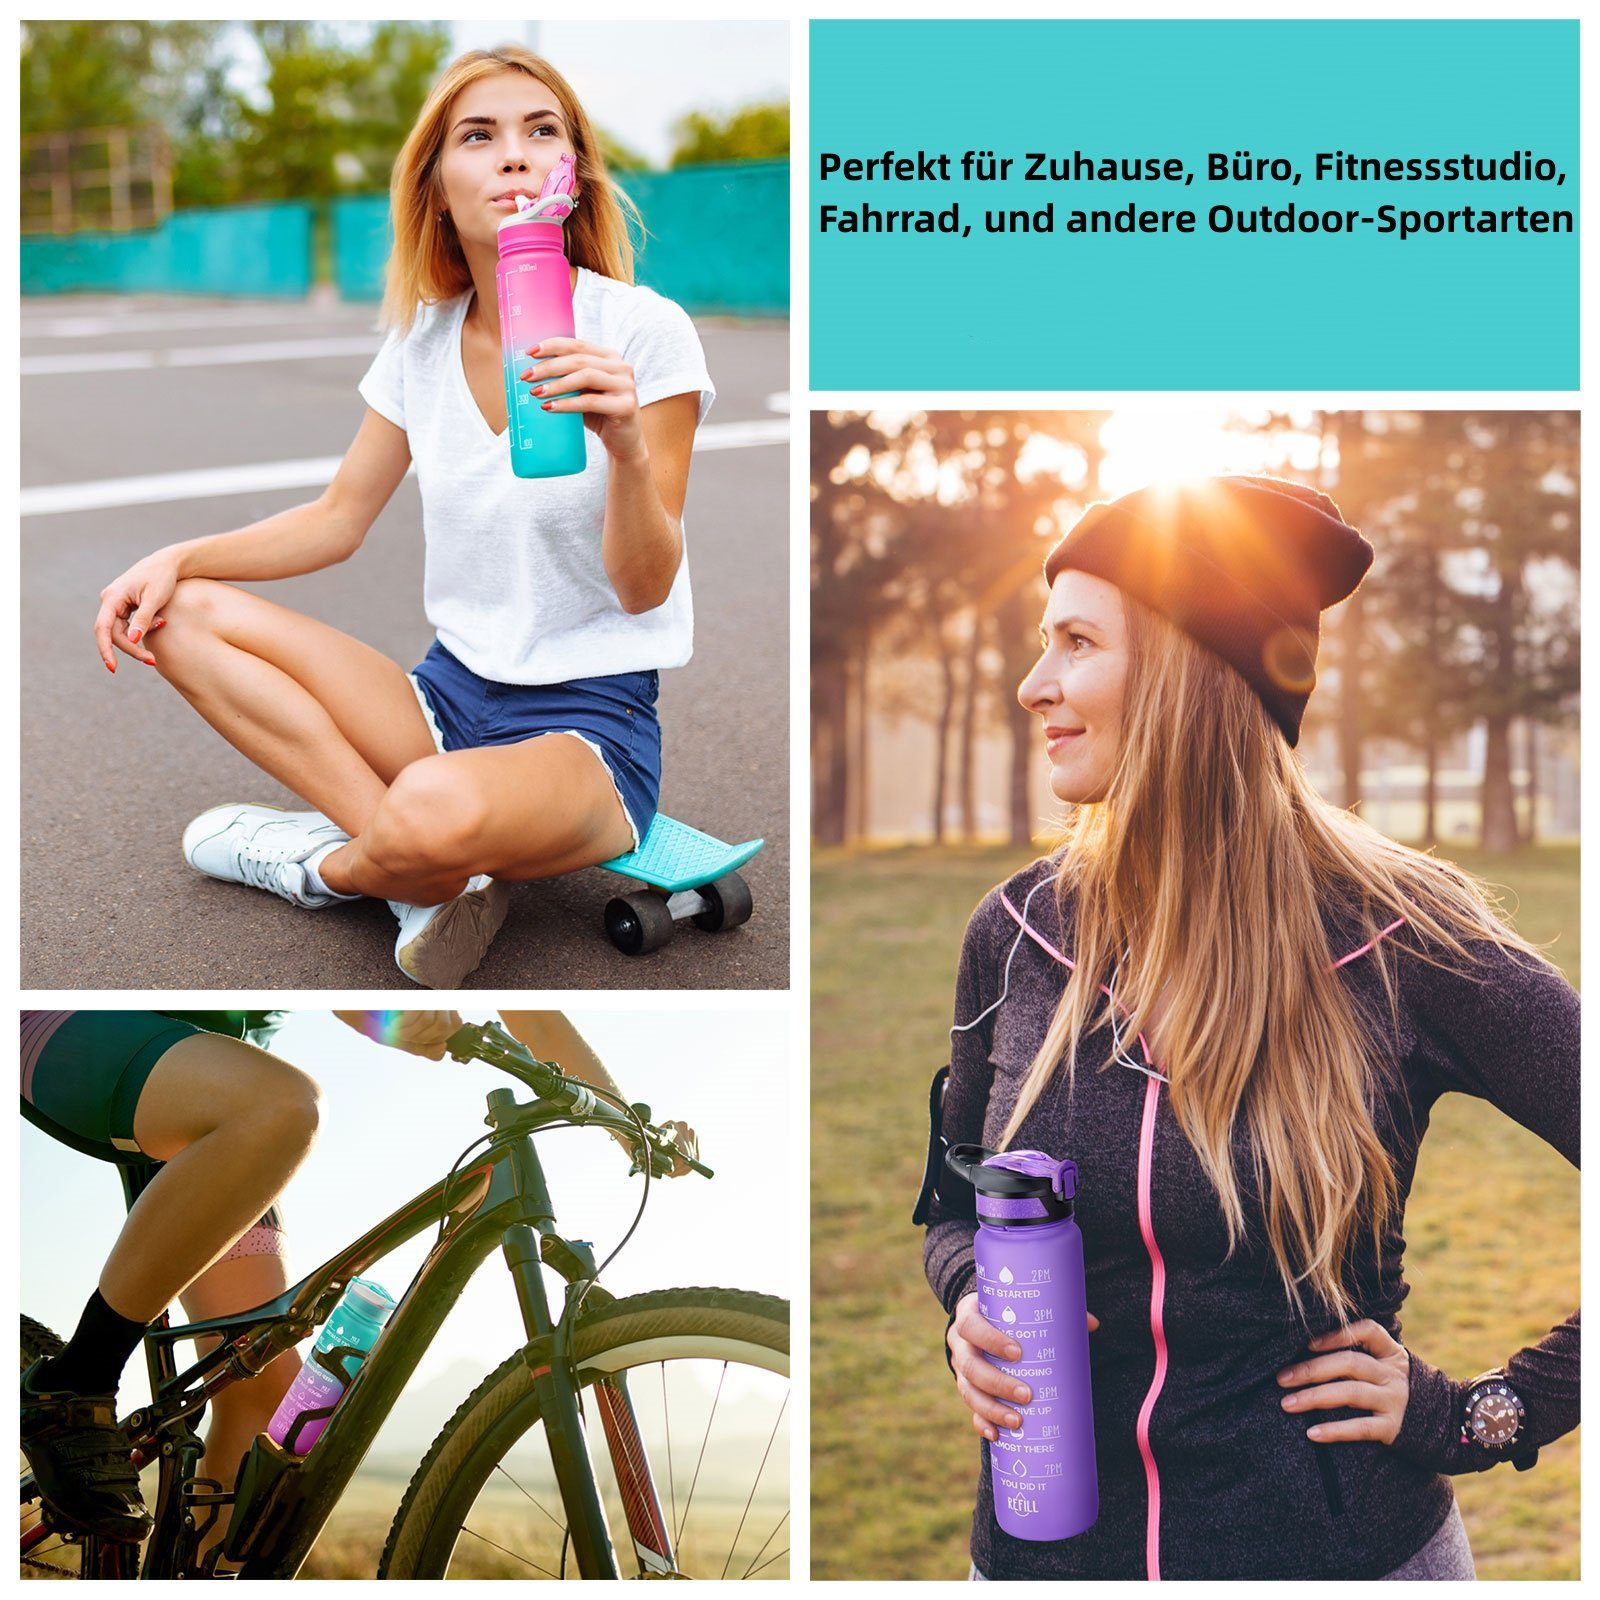 WISHDOR Trinkflasche Sport 1L, Wandern 1 Pink Zeitmarkierung Wasserflasche Strohhalm Fahrrad Auslaufsicher Outdoor Liter Fitness Sportflasche und BPA-Frei Camping